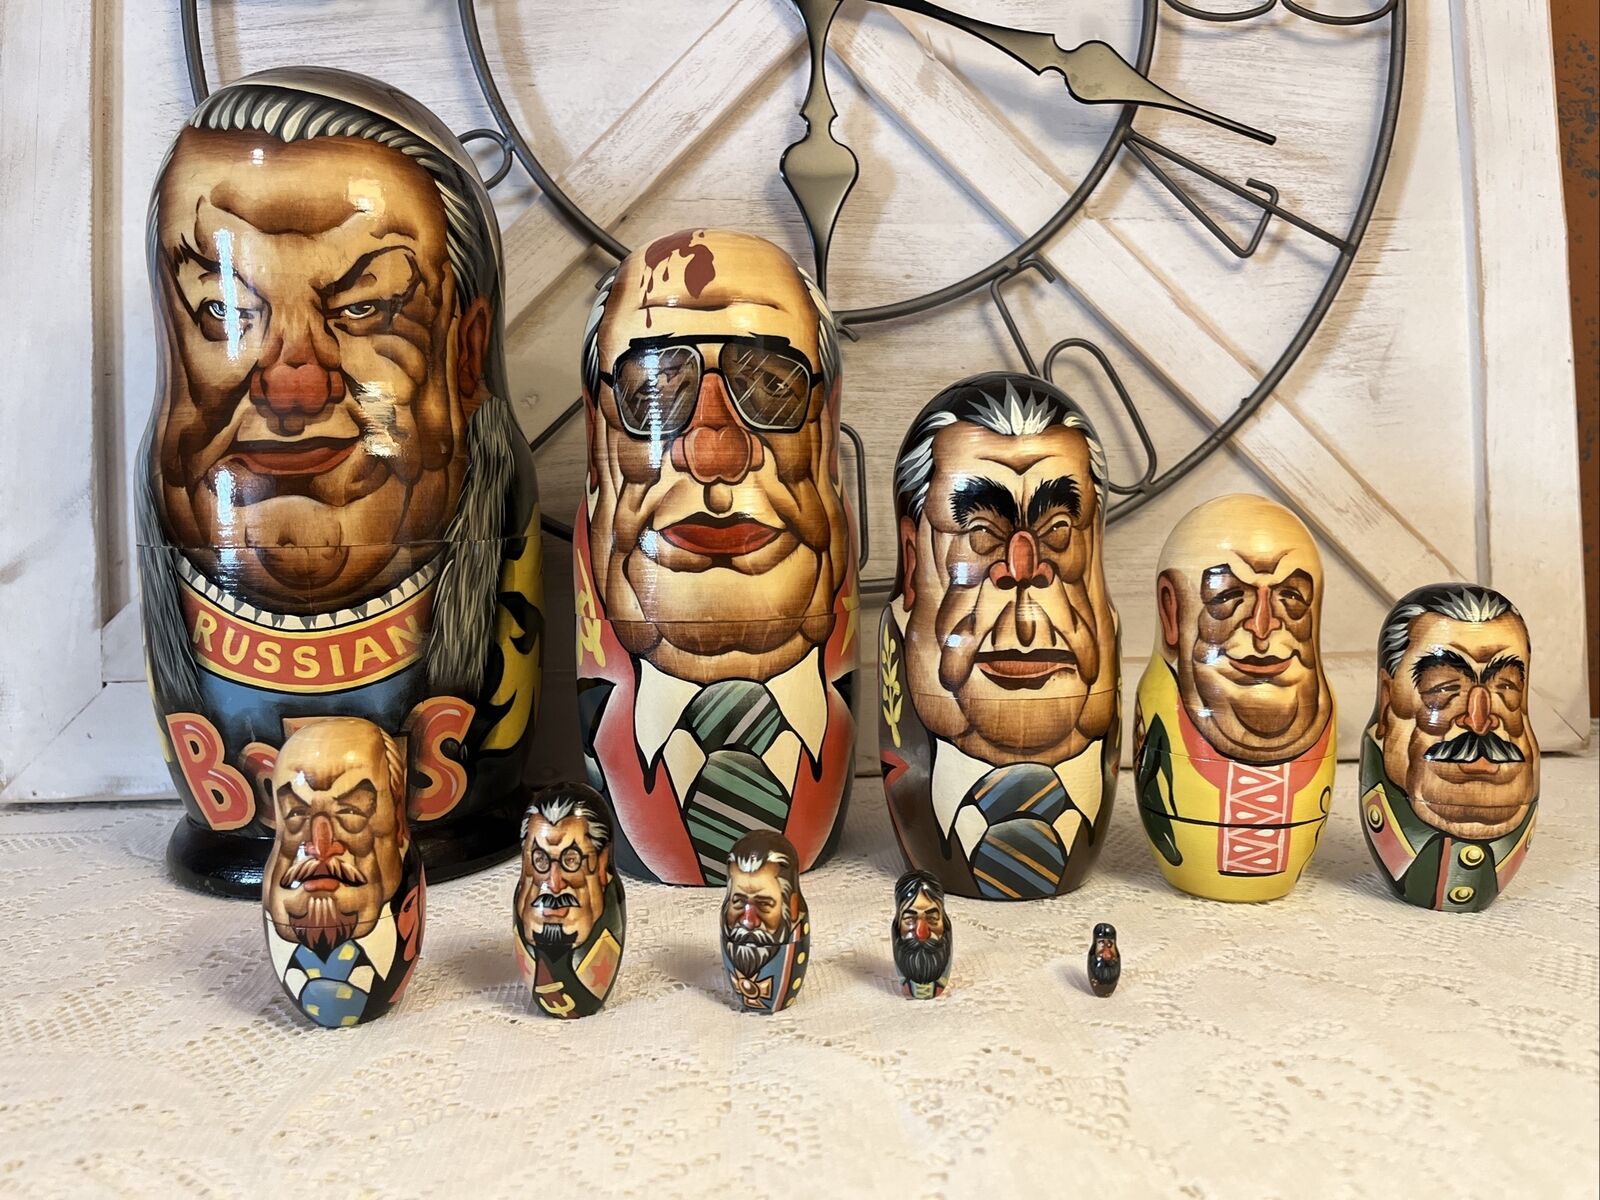 Vtg Unique 10.5” Tall Russian Soviet Leaders Nesting Dolls - 10 Dolls